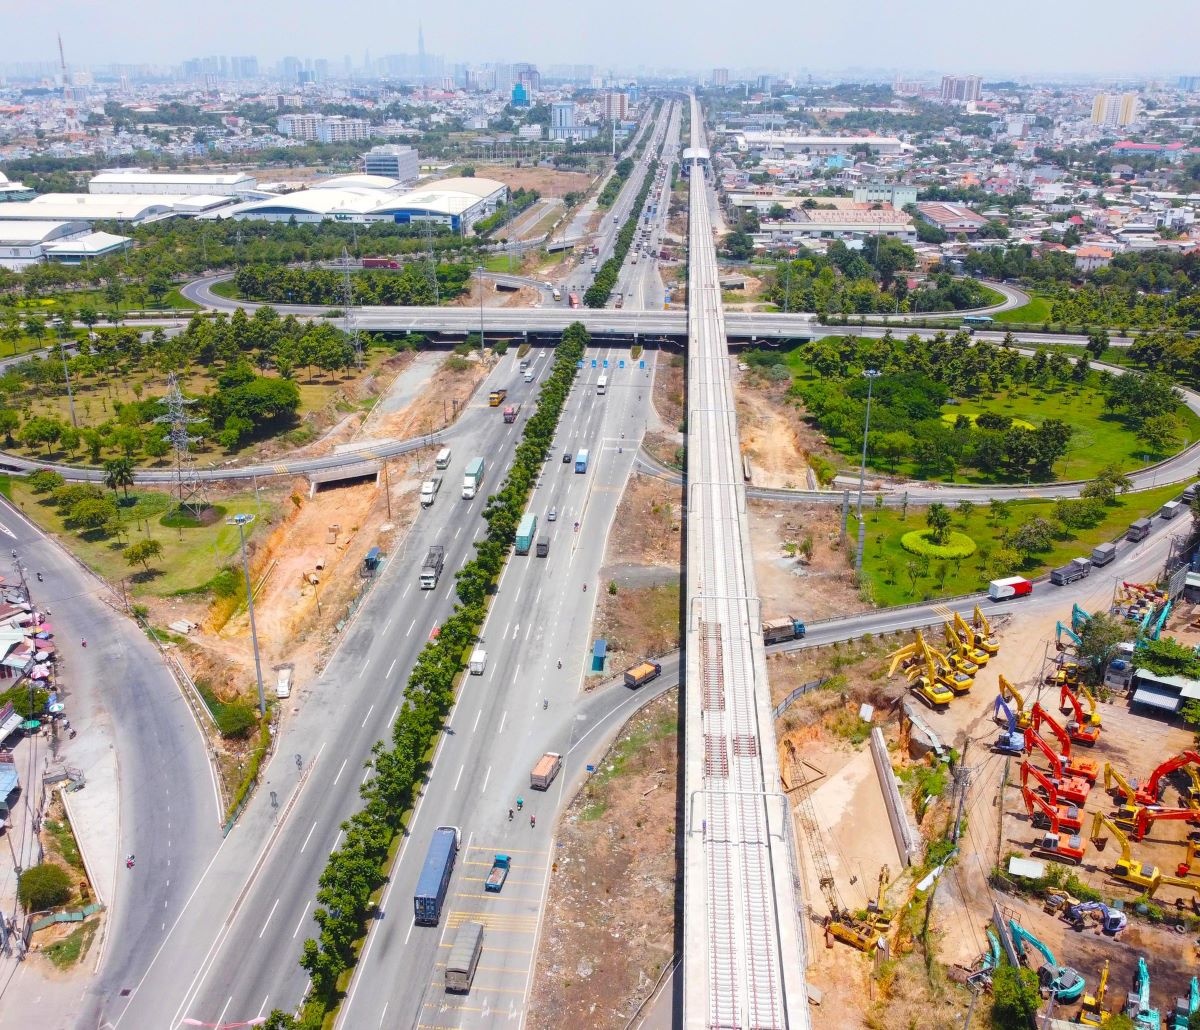 Mở rộng của các dự án hạ tầng sẽ giúp gia tăng quá trình hình thành các khu đô thị, giải quyết bài toán nhà ở cho TP Hồ Chí Minh.